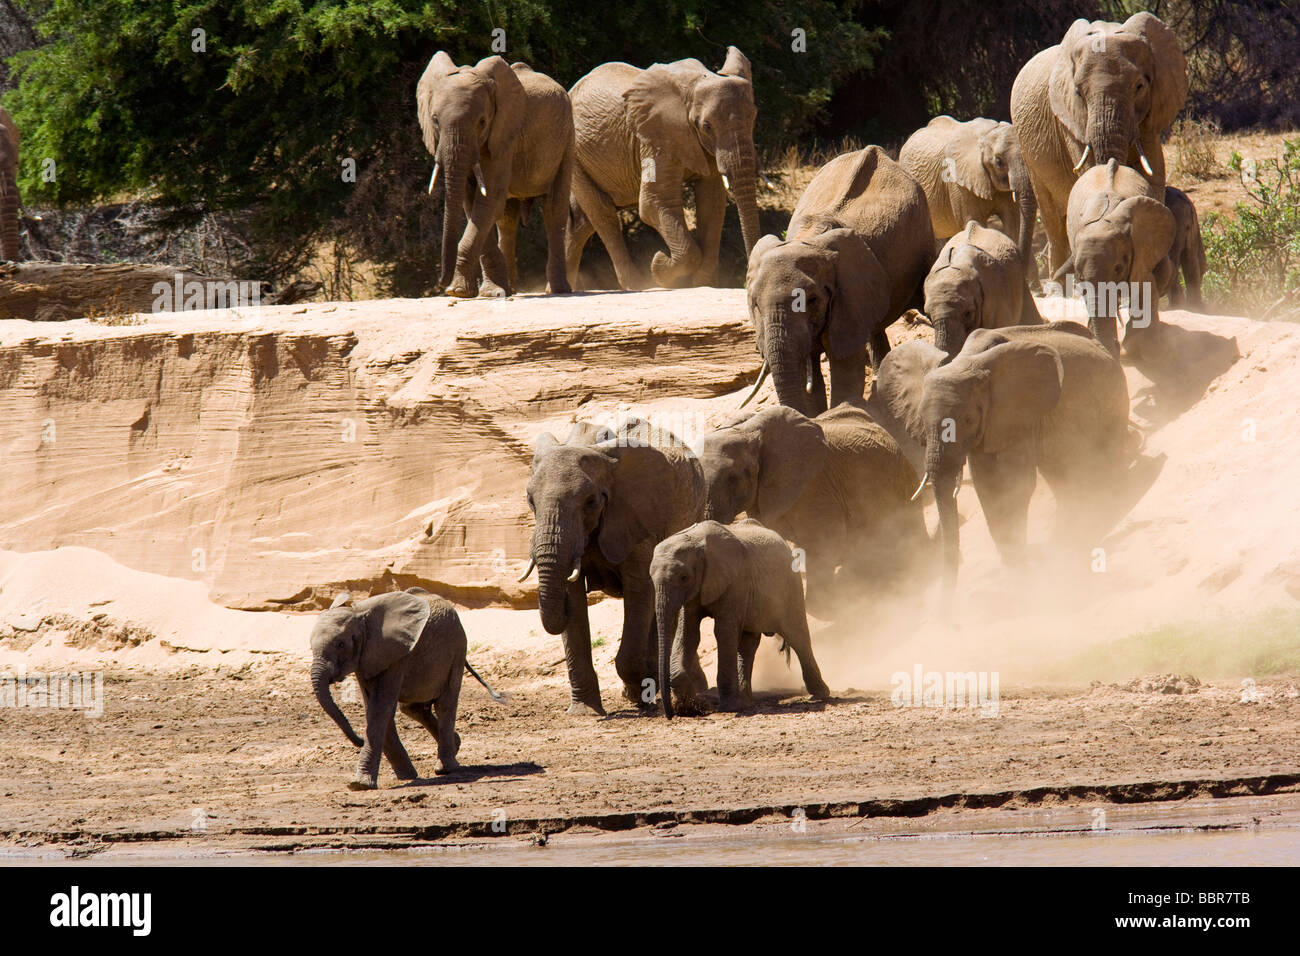 Famille d'éléphants de descendre à la rivière pour boire - Réserve nationale de Samburu, Kenya Banque D'Images